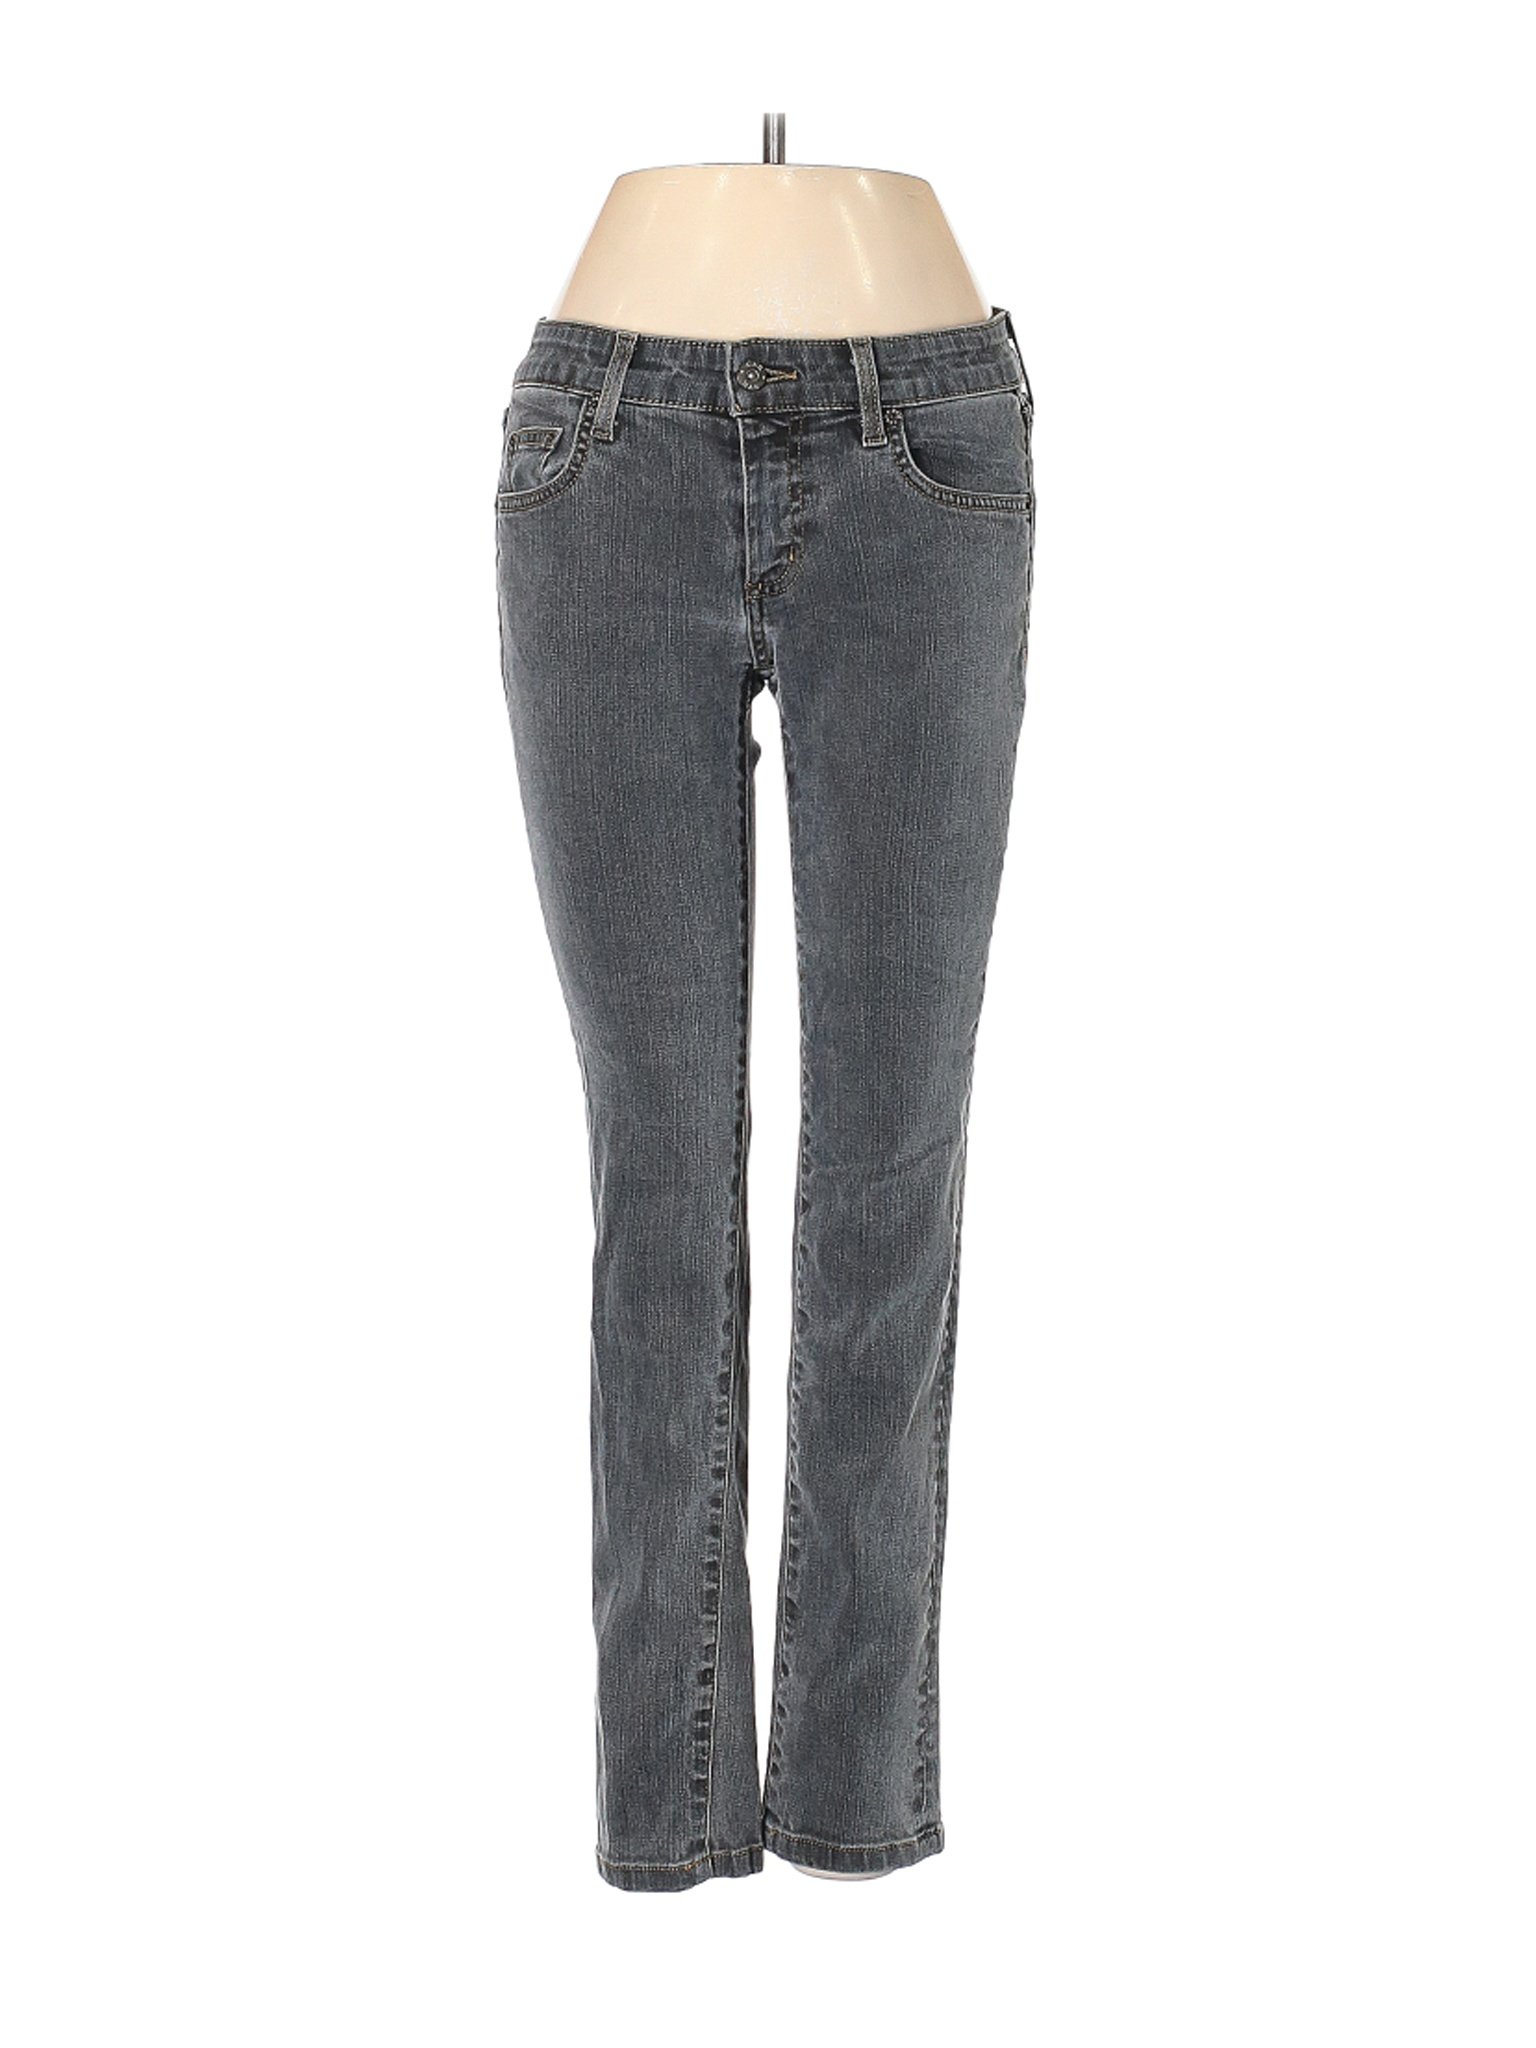 Carmar Women Gray Jeans 26W | eBay